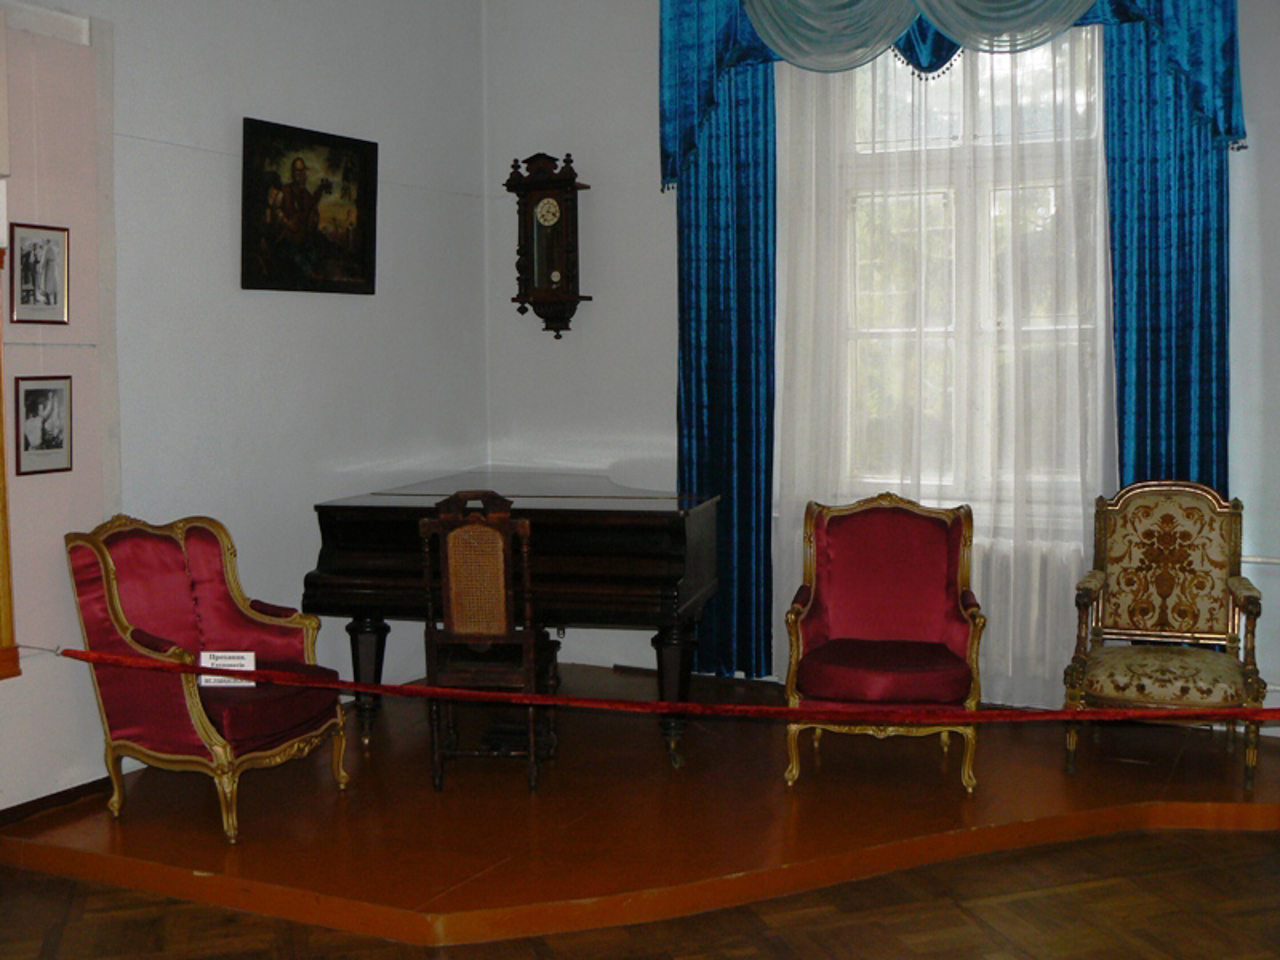 Rivne Museum of Local Lore